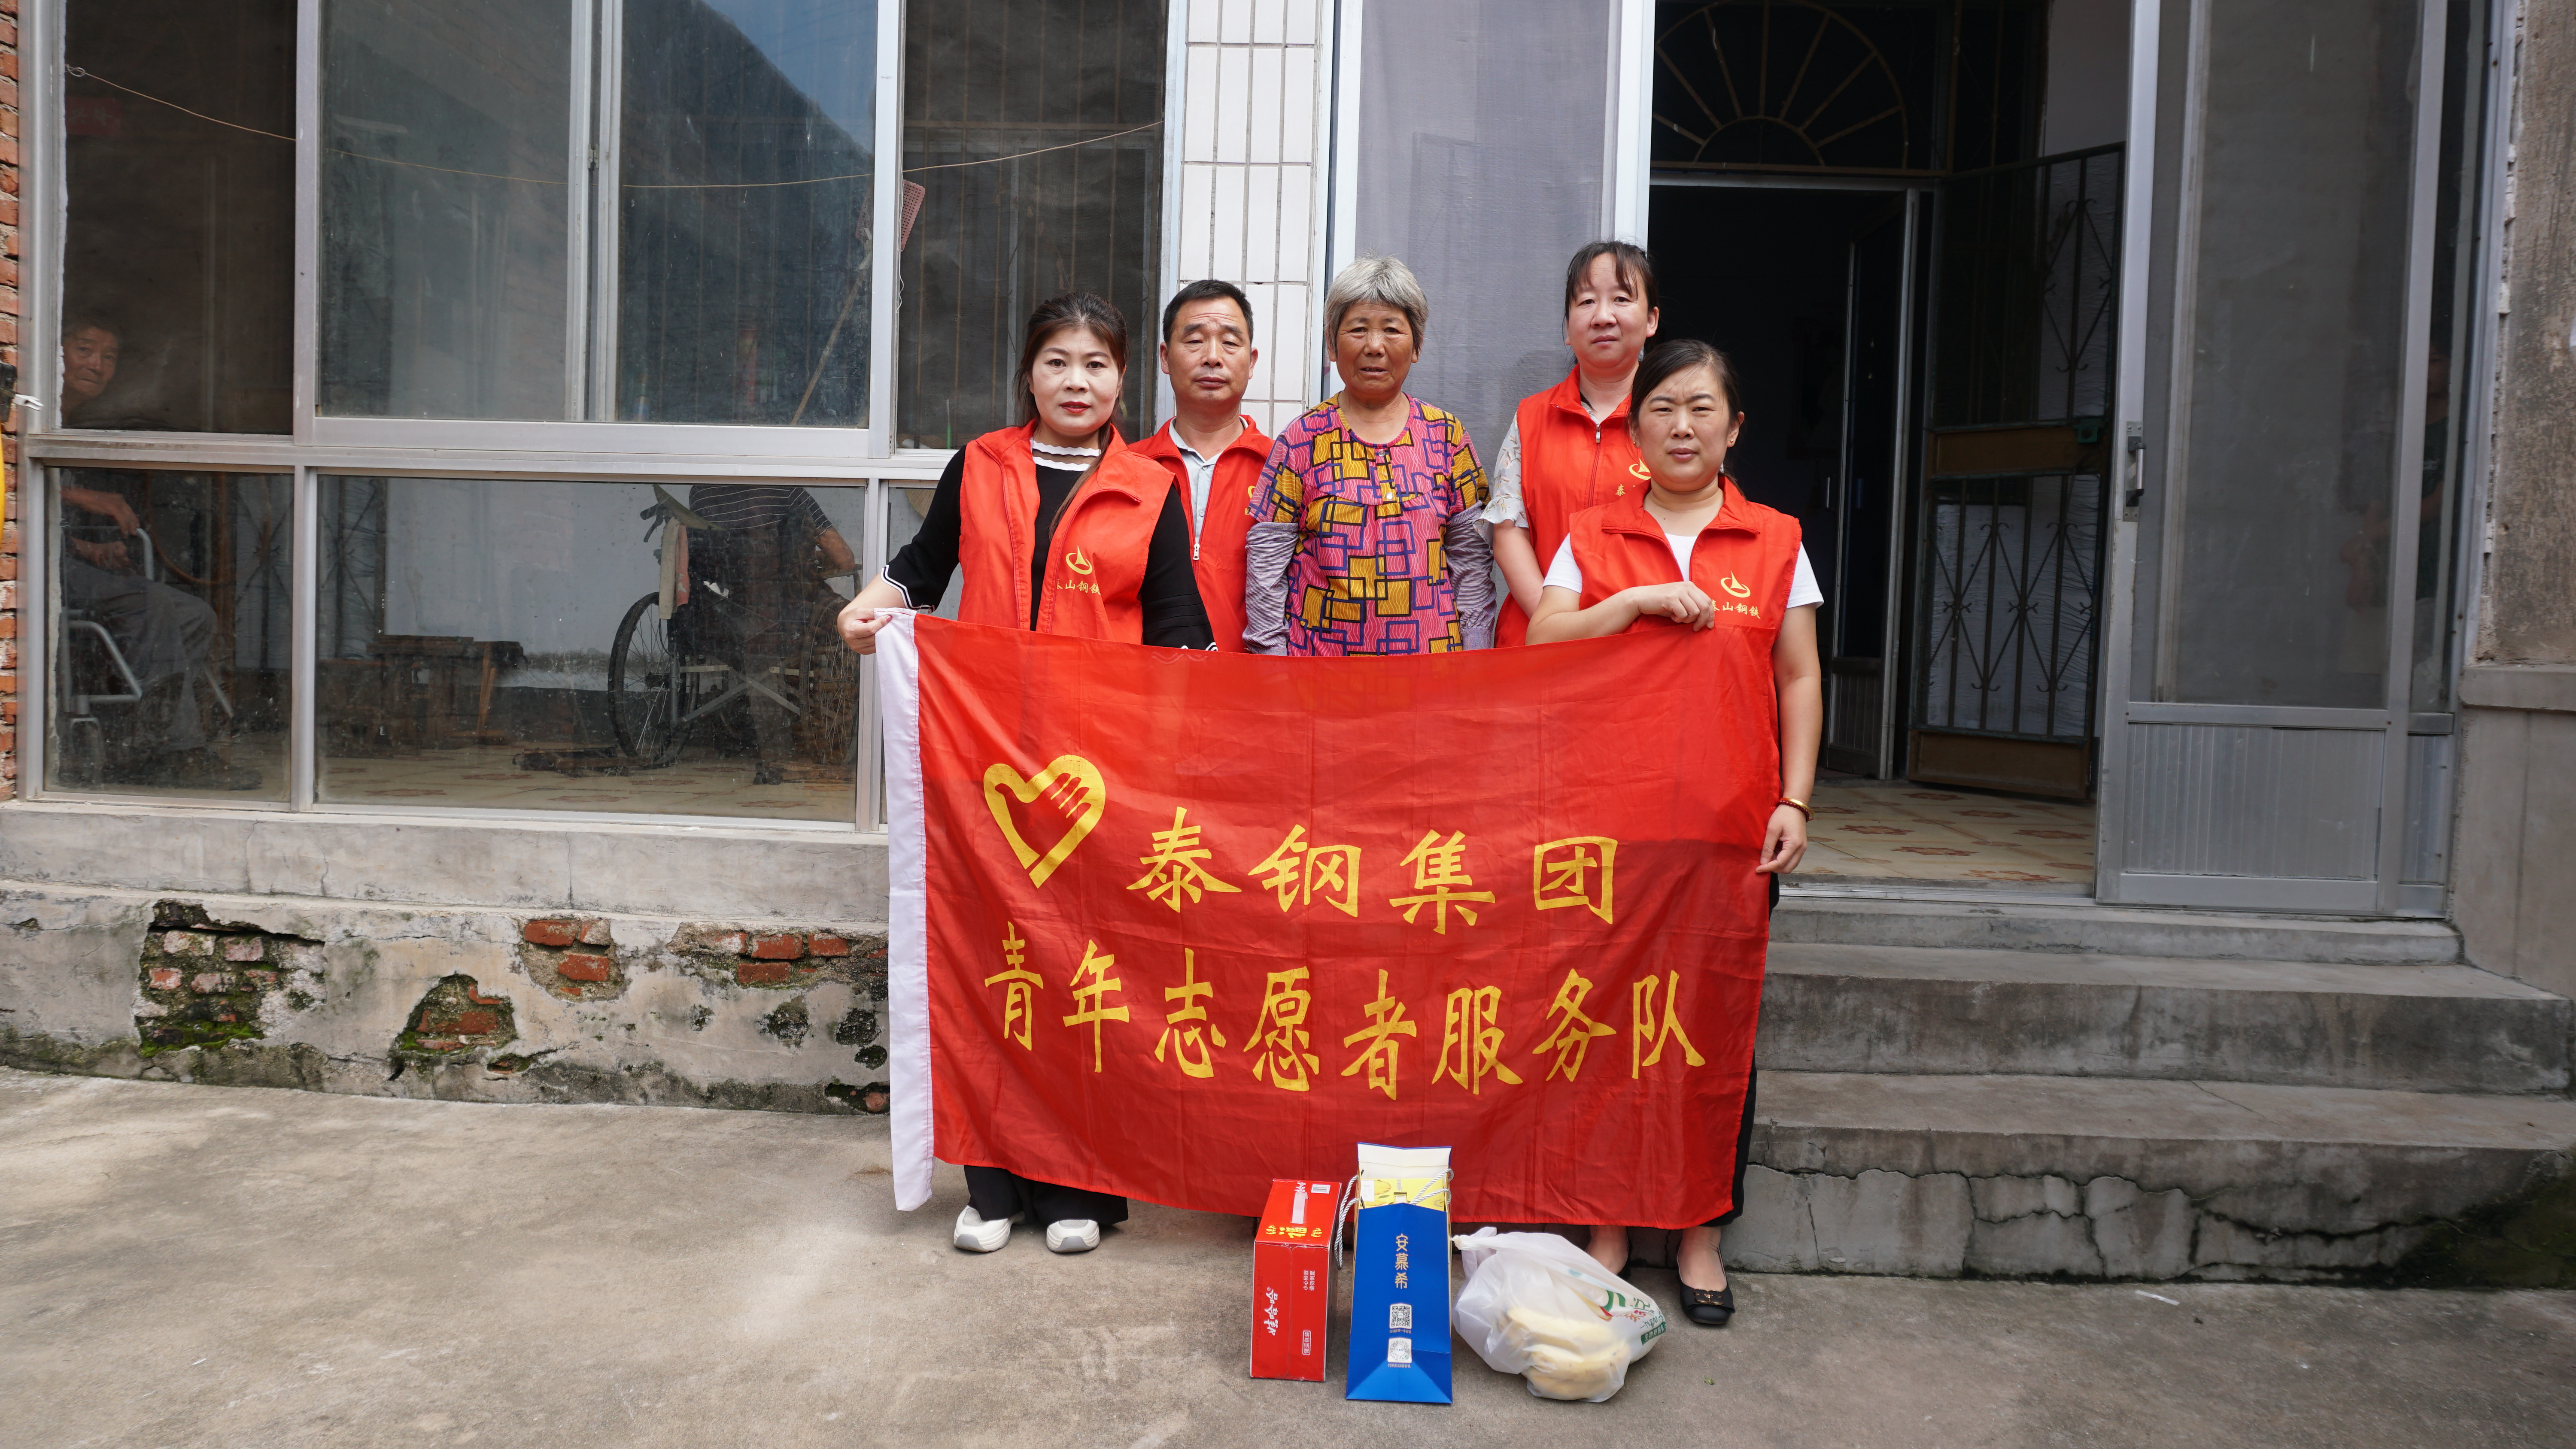 亚游ag亚游平台「中国」官方网站青年志愿者慰问贫困户